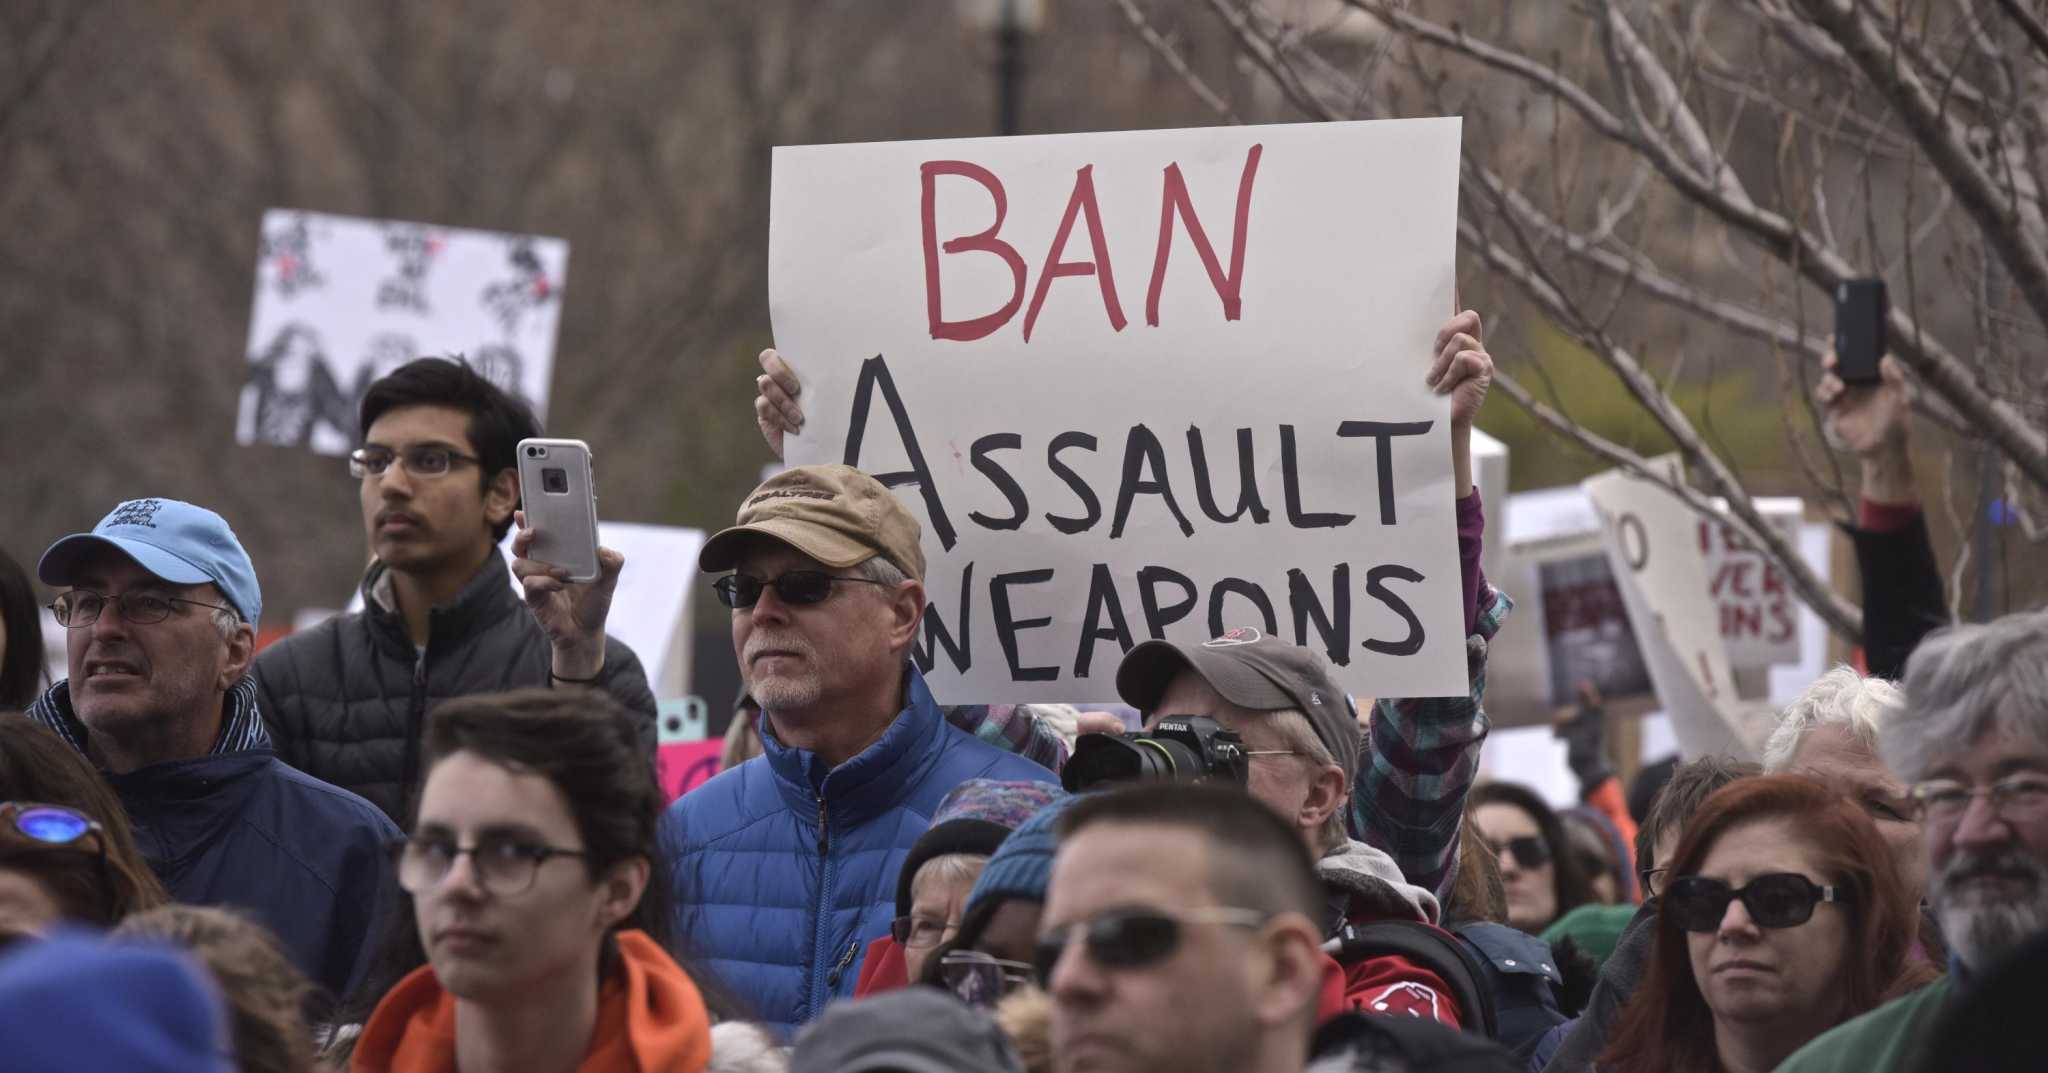 CT lawmakers push new gun laws